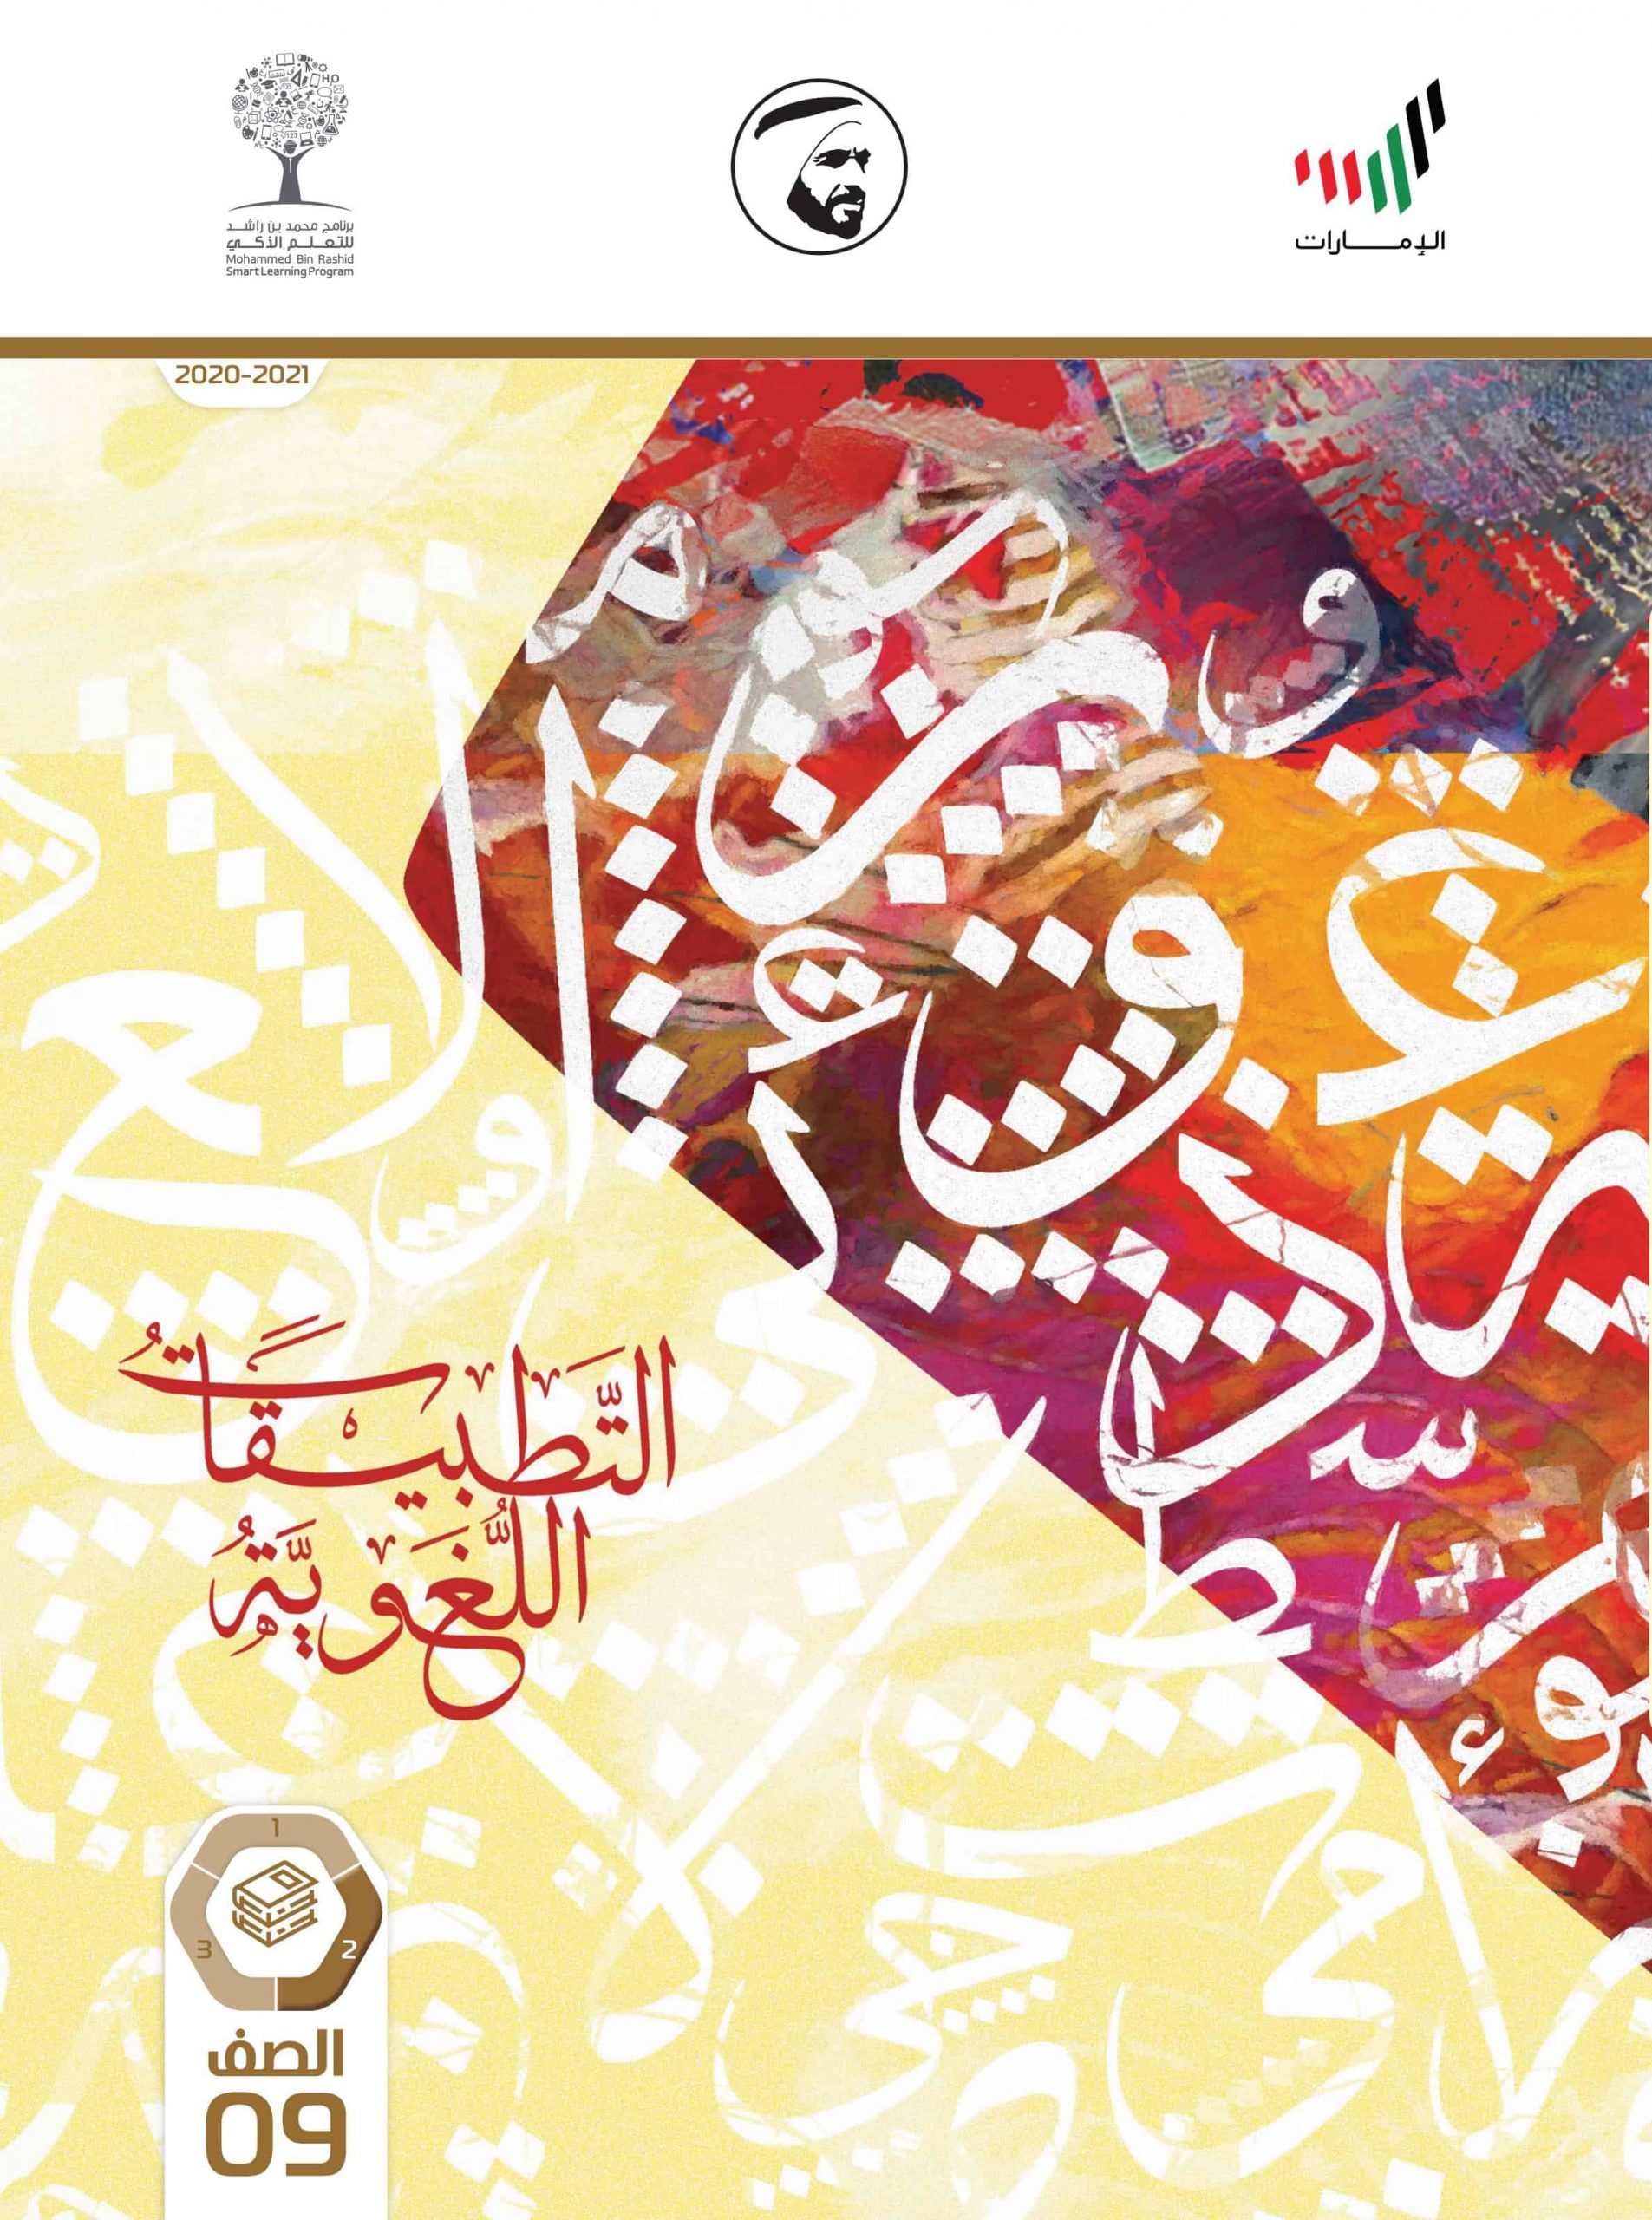 كتاب التطبيقات اللغوية الفصل الدراسي الثاني 2020-2021 الصف التاسع مادة اللغة العربية 